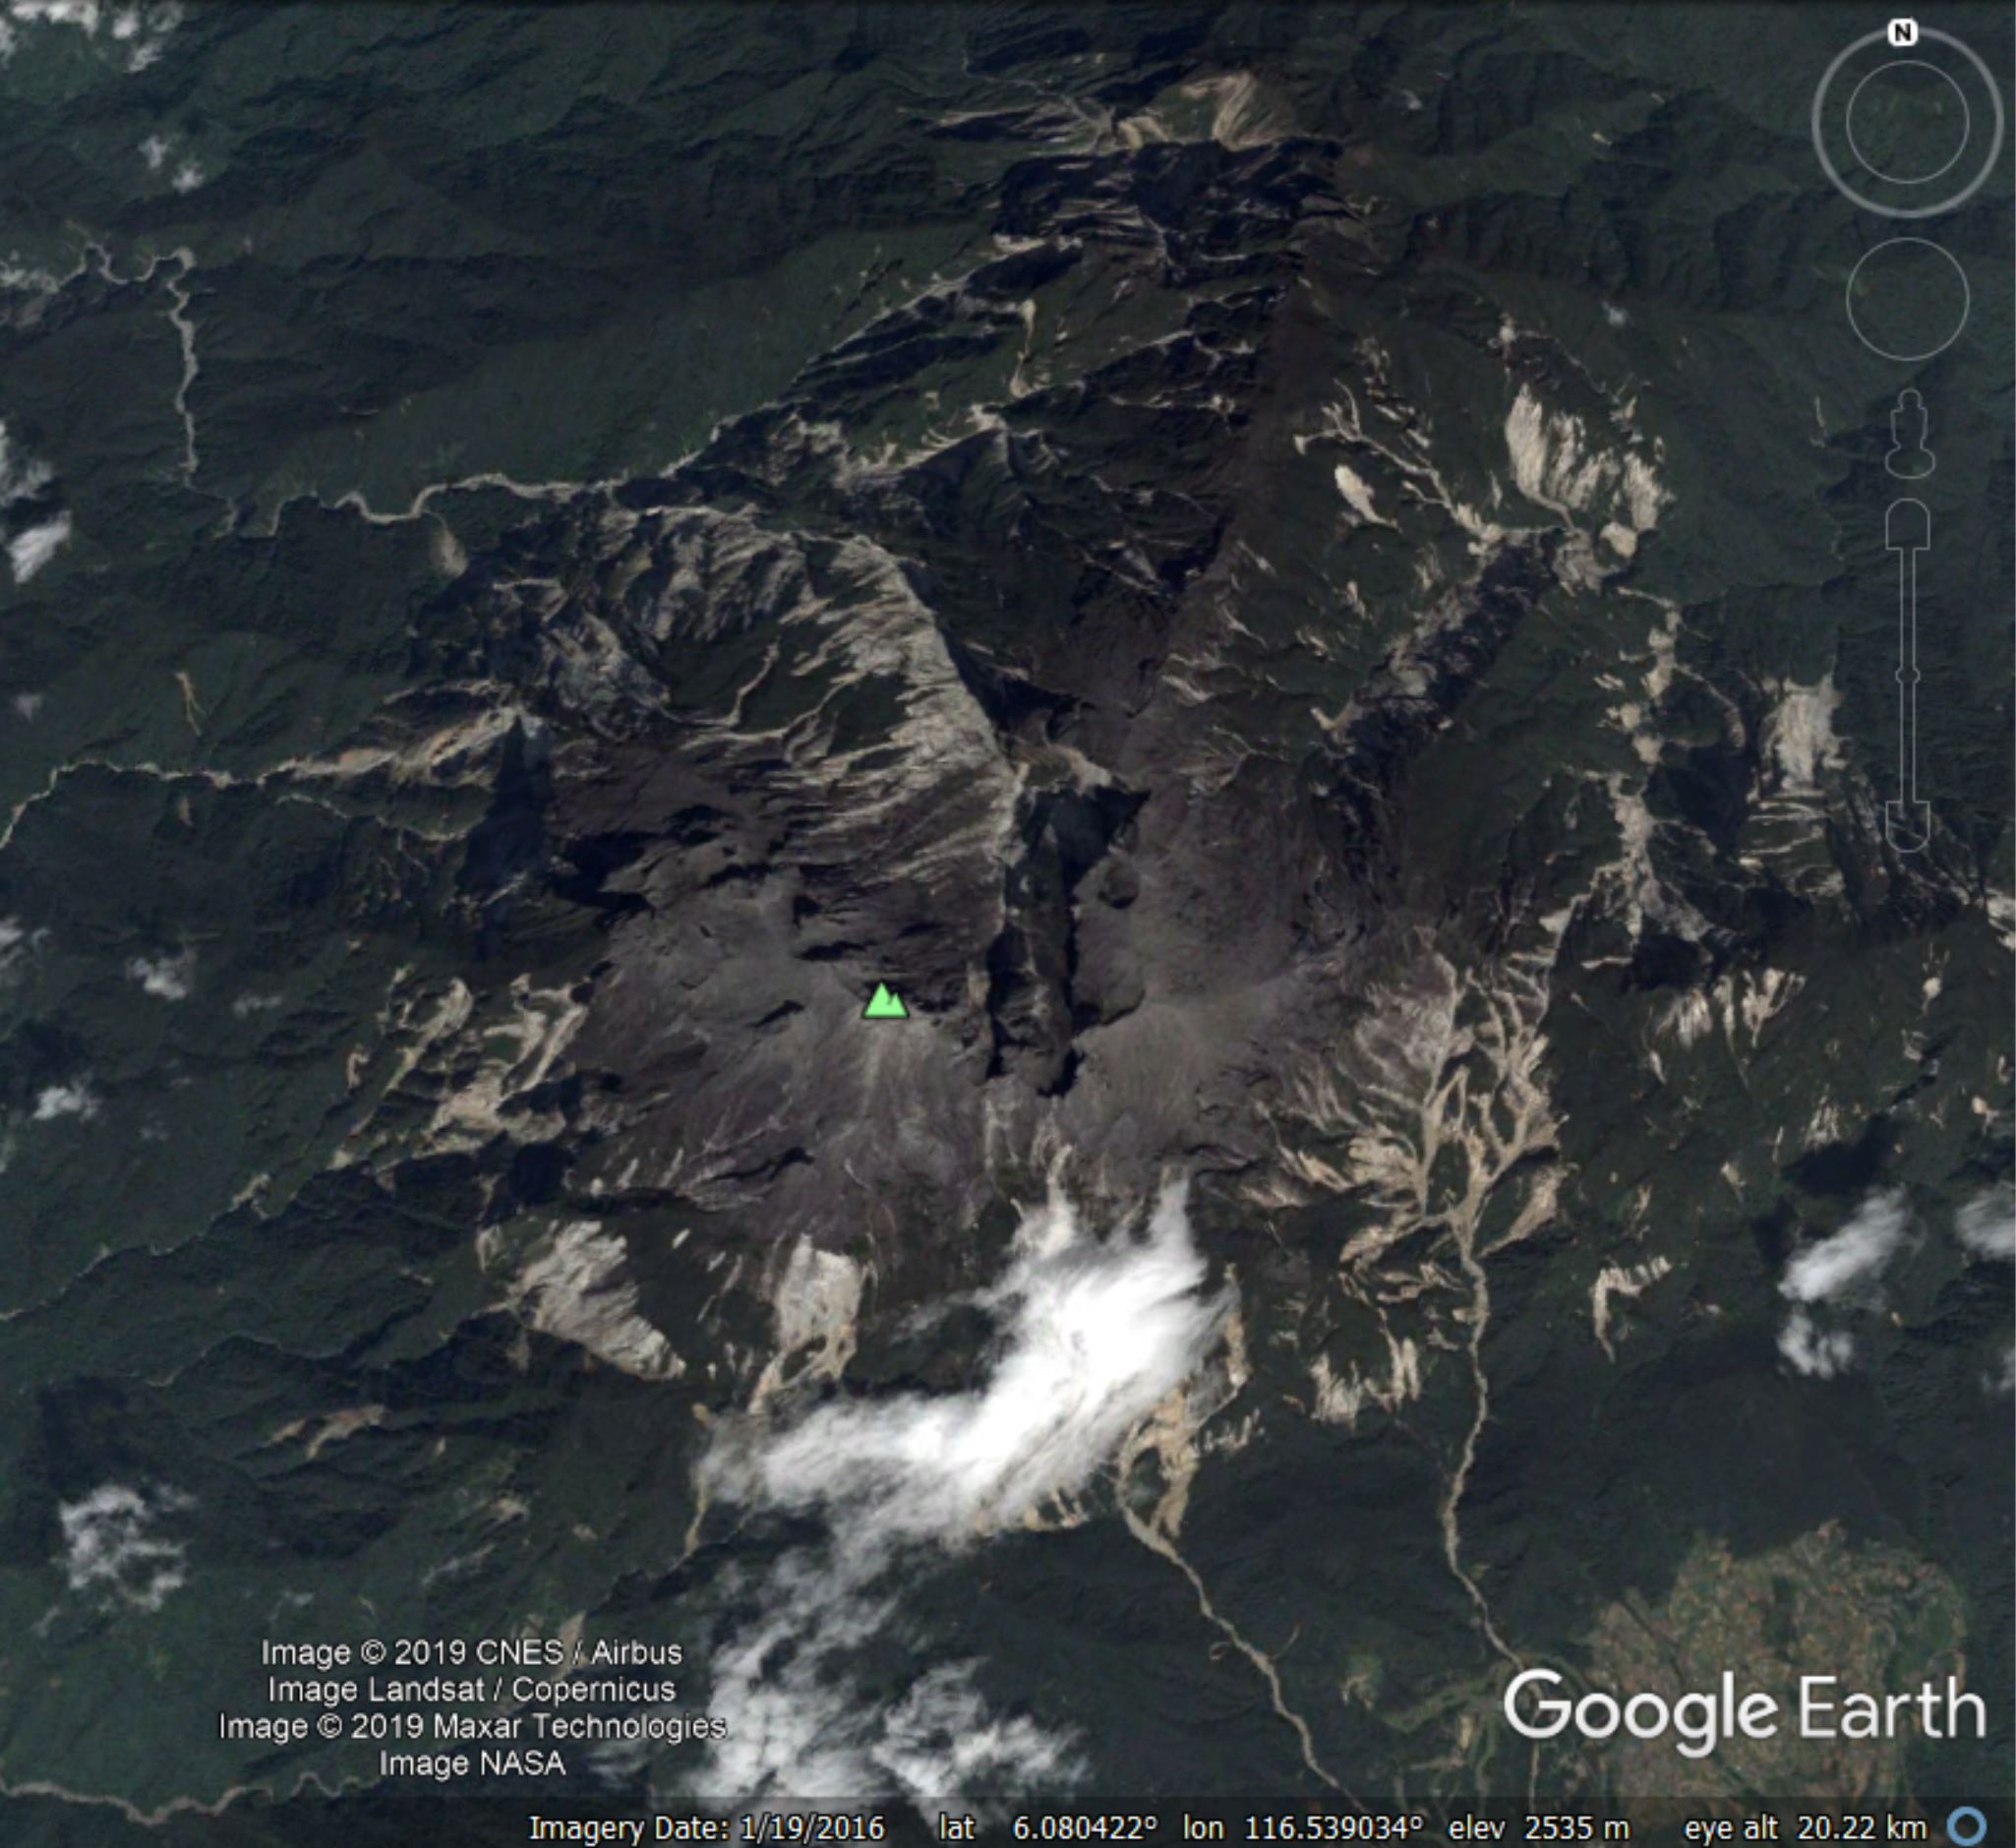 Mount kinabalu volcano is a